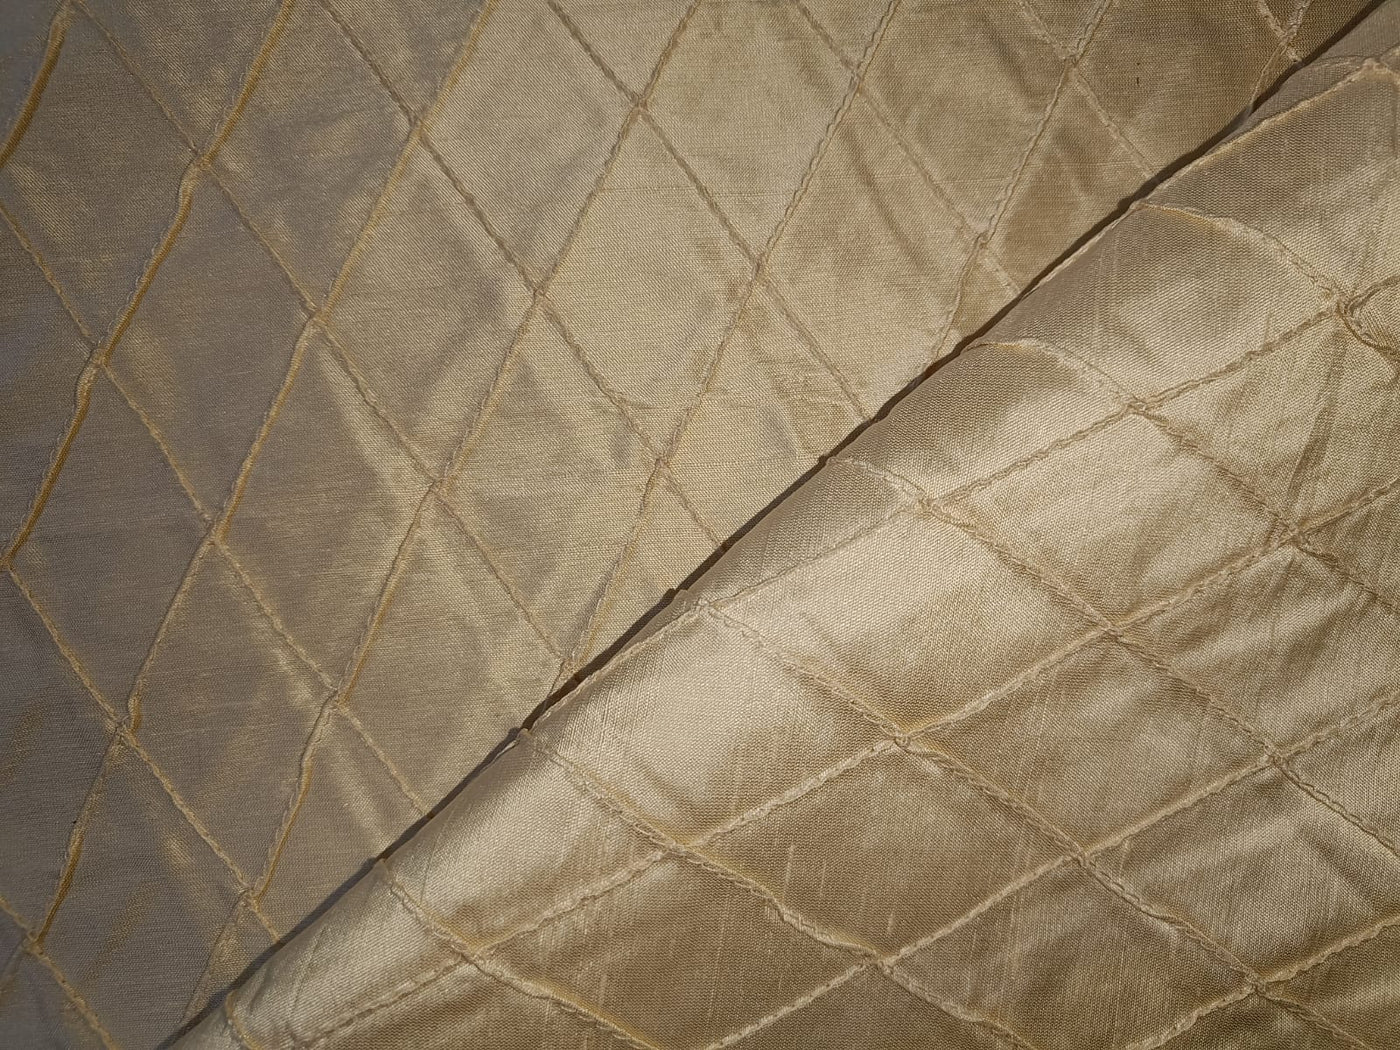 Silk dupioni Beige color fabric pintuck design 44" wide DUPP16[1]